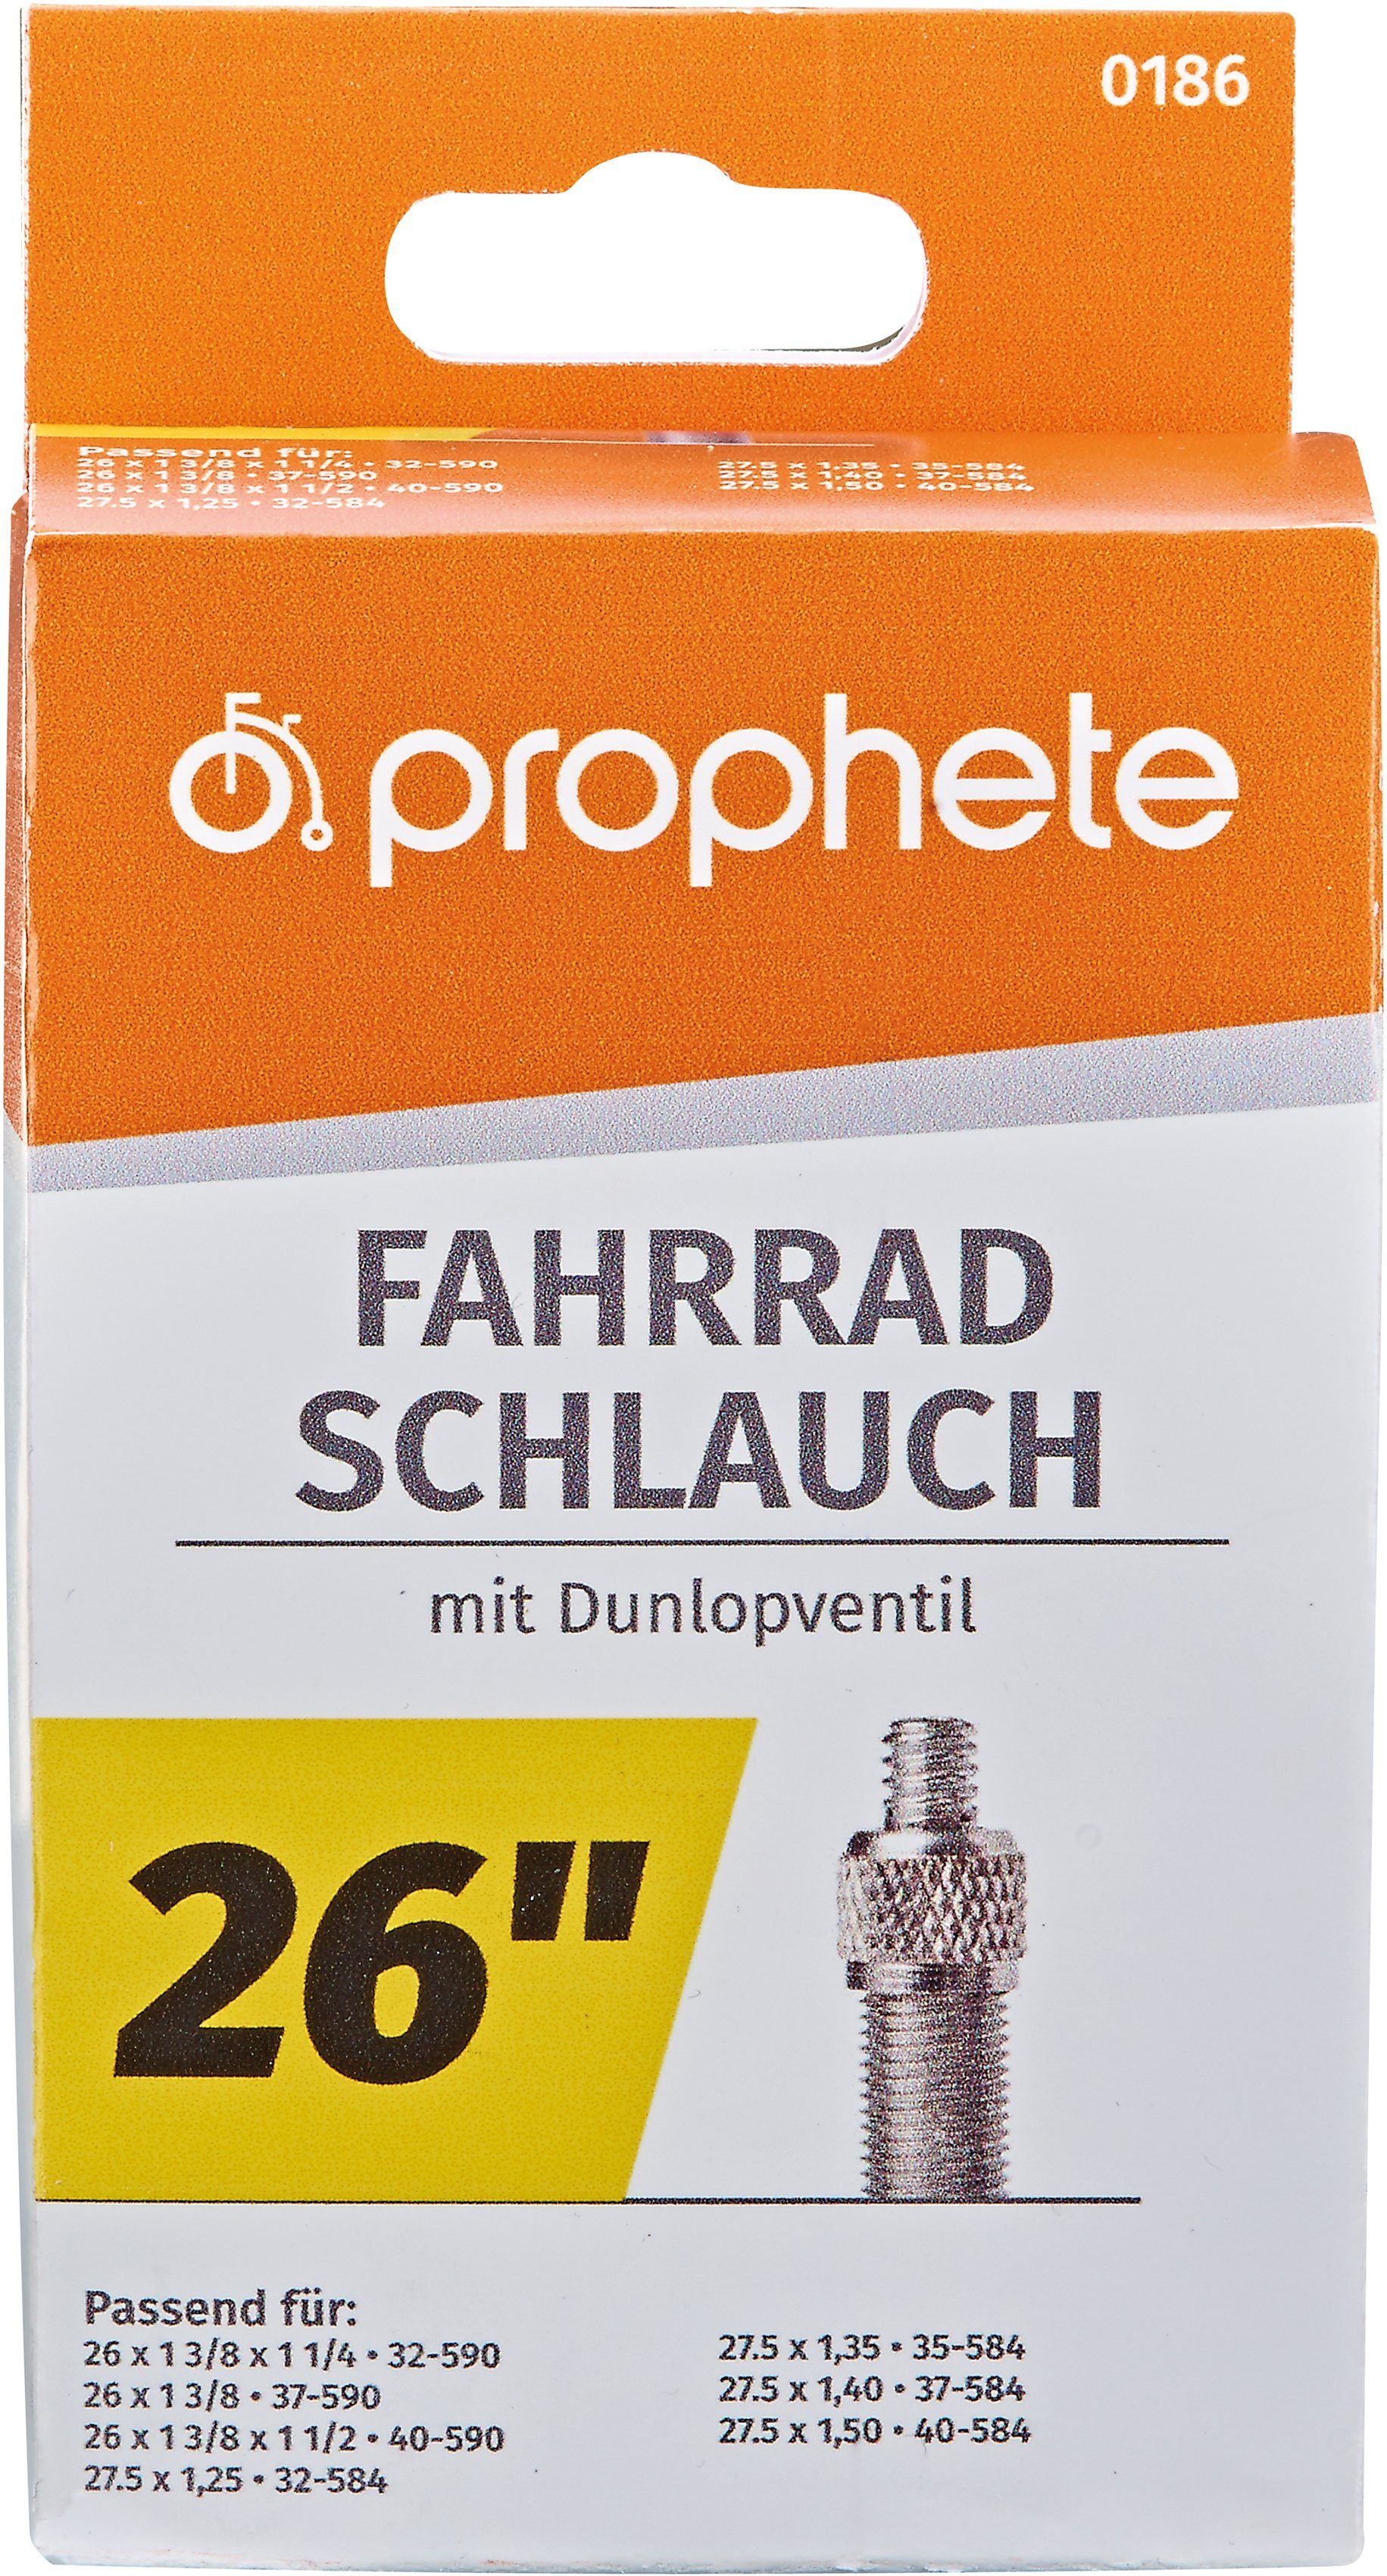 Prophete Fahrradschlauch Fahrradschlauch, 26 Zoll (66,04 cm) | Fahrradschläuche